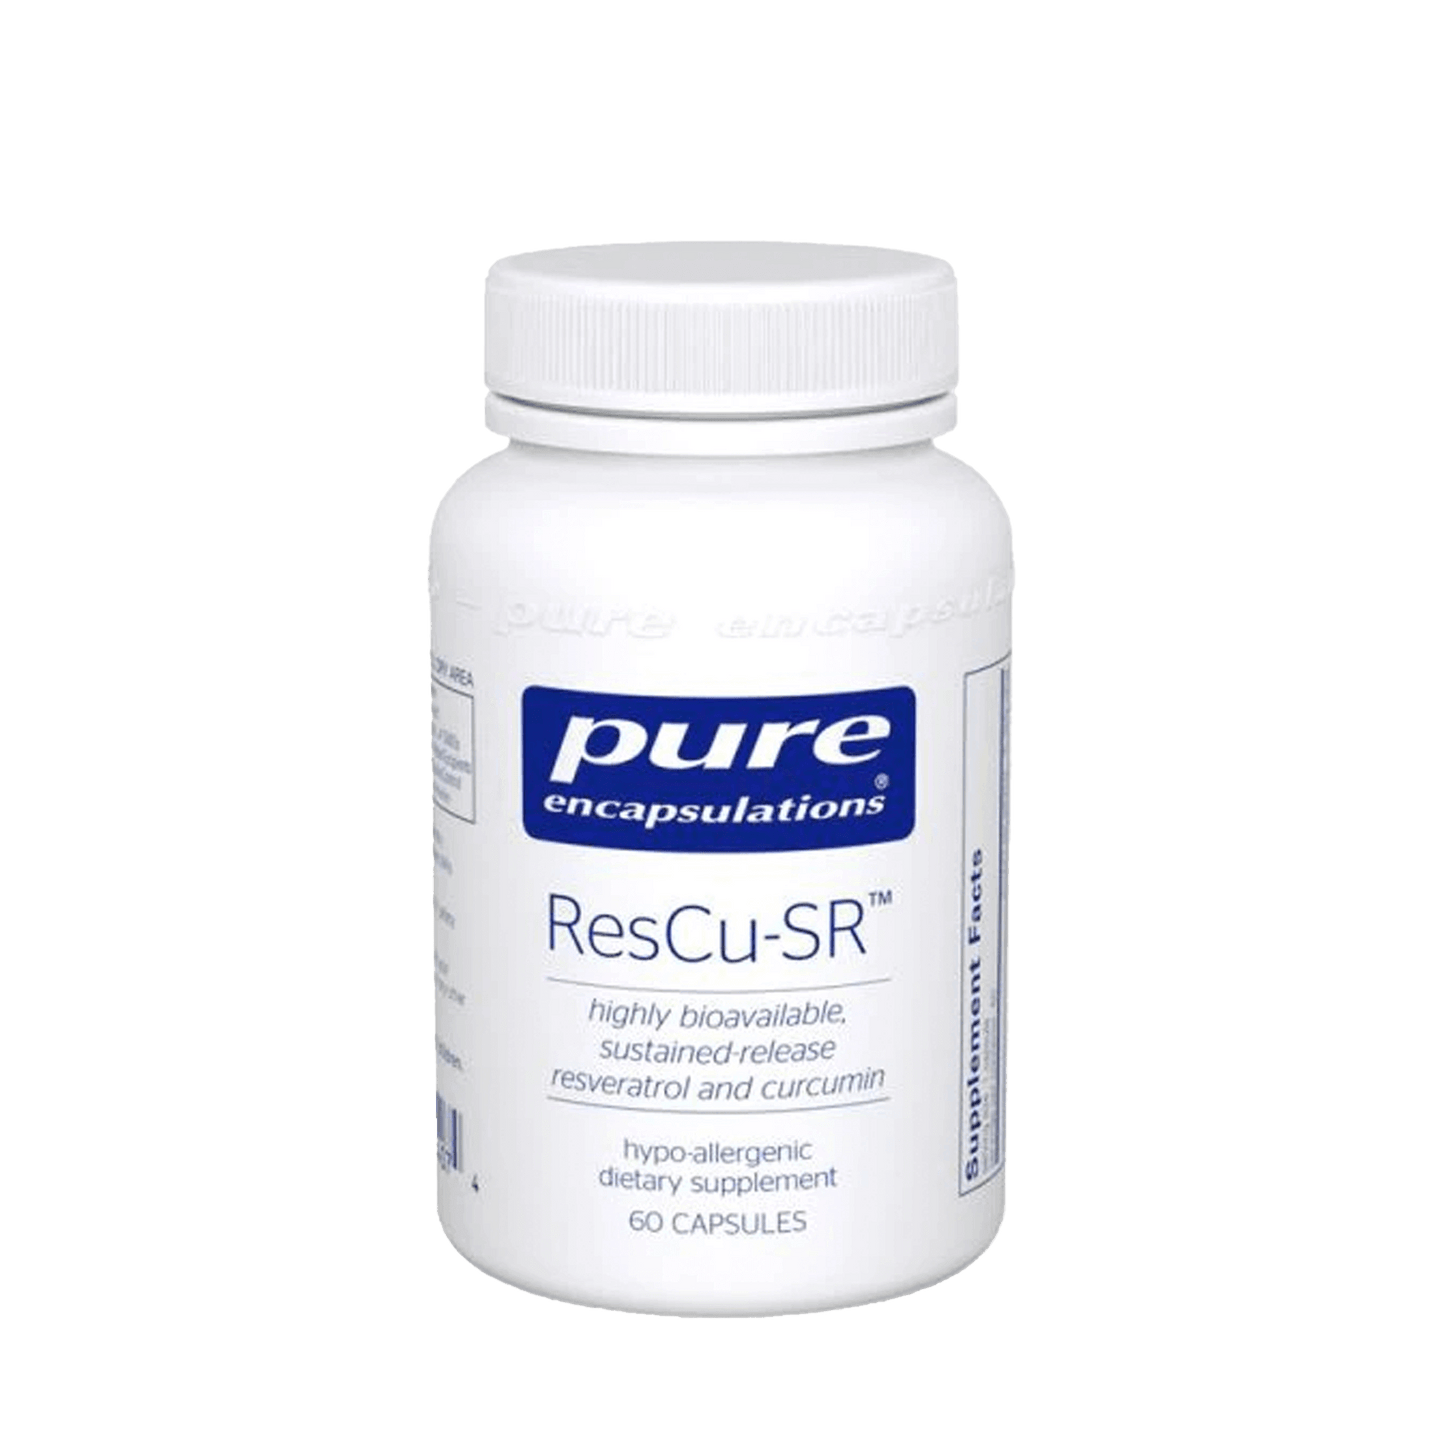 Pure encapsulations ResCu-SR Capsules